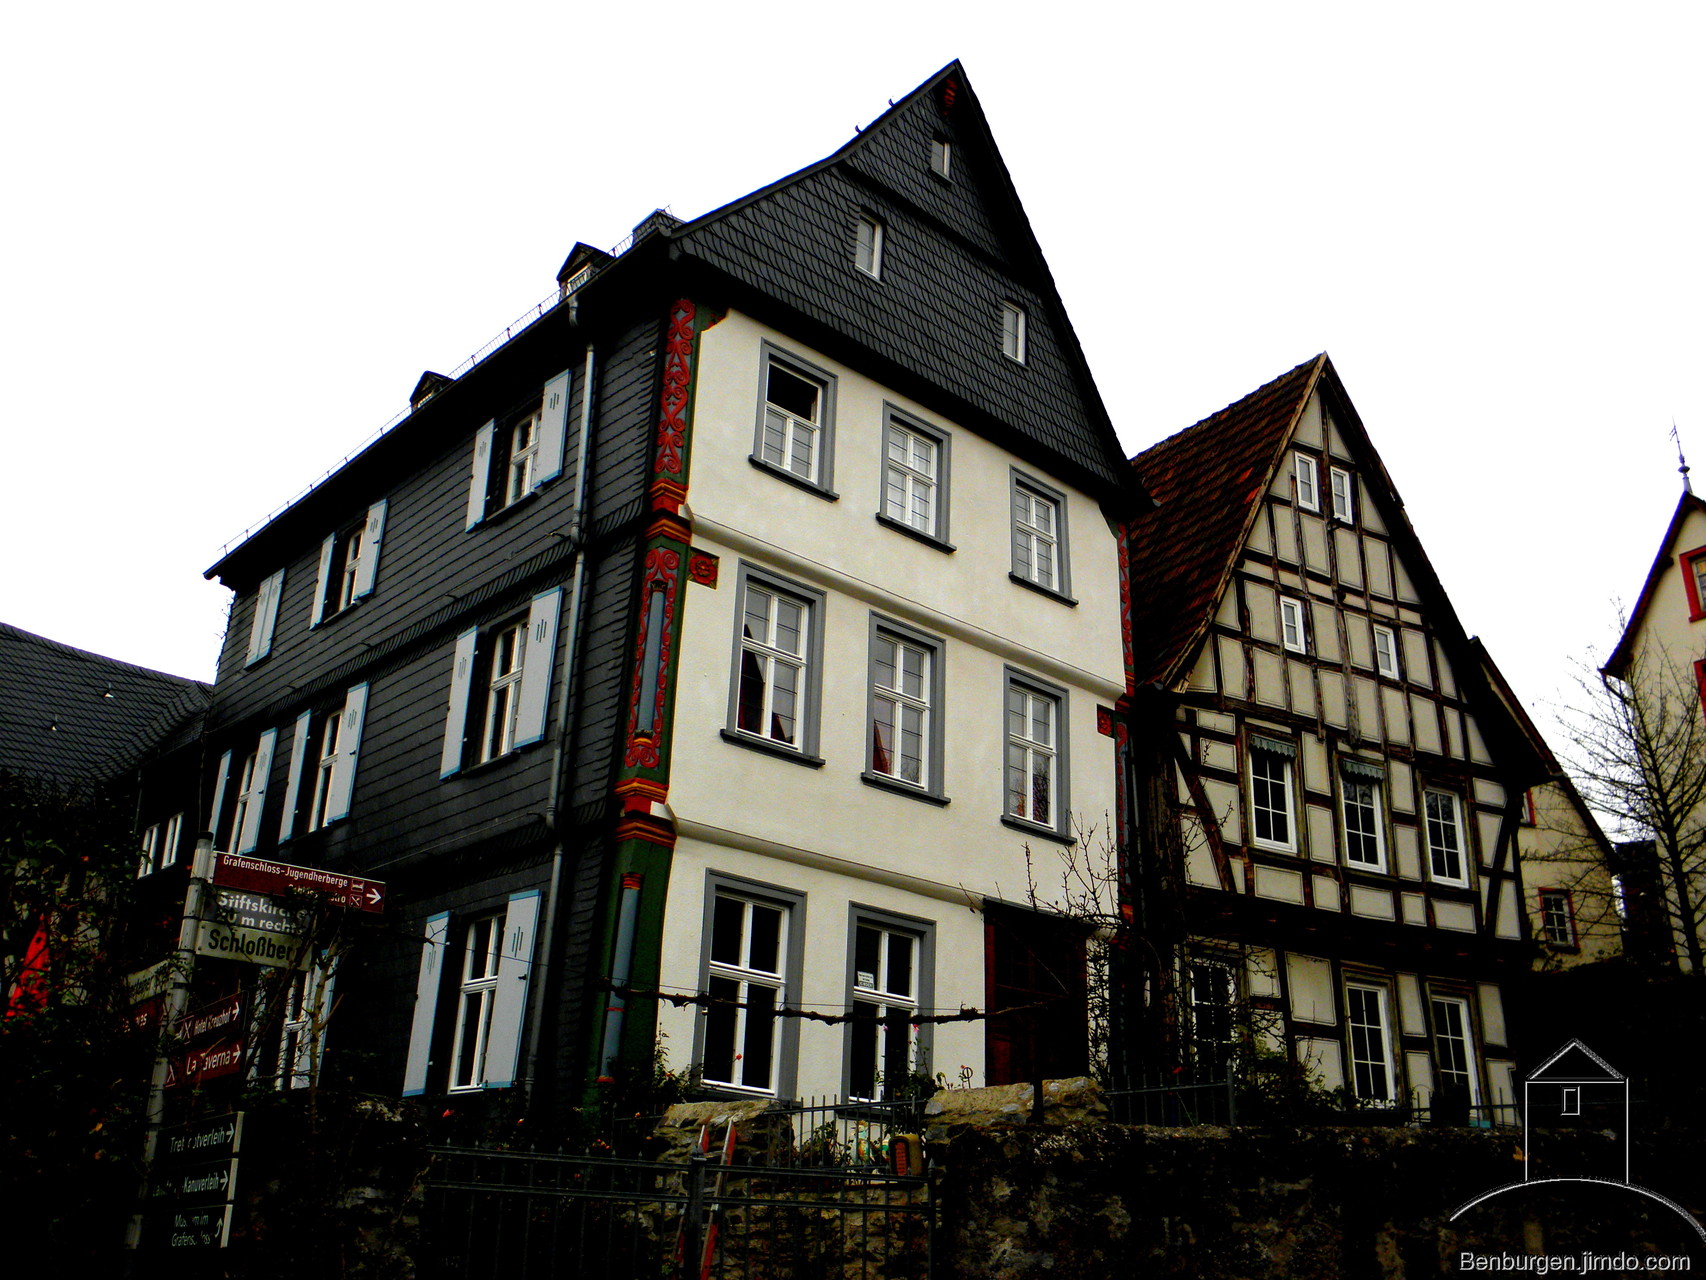 Burgmannenhaus unterhalb des Grafenschlosses.